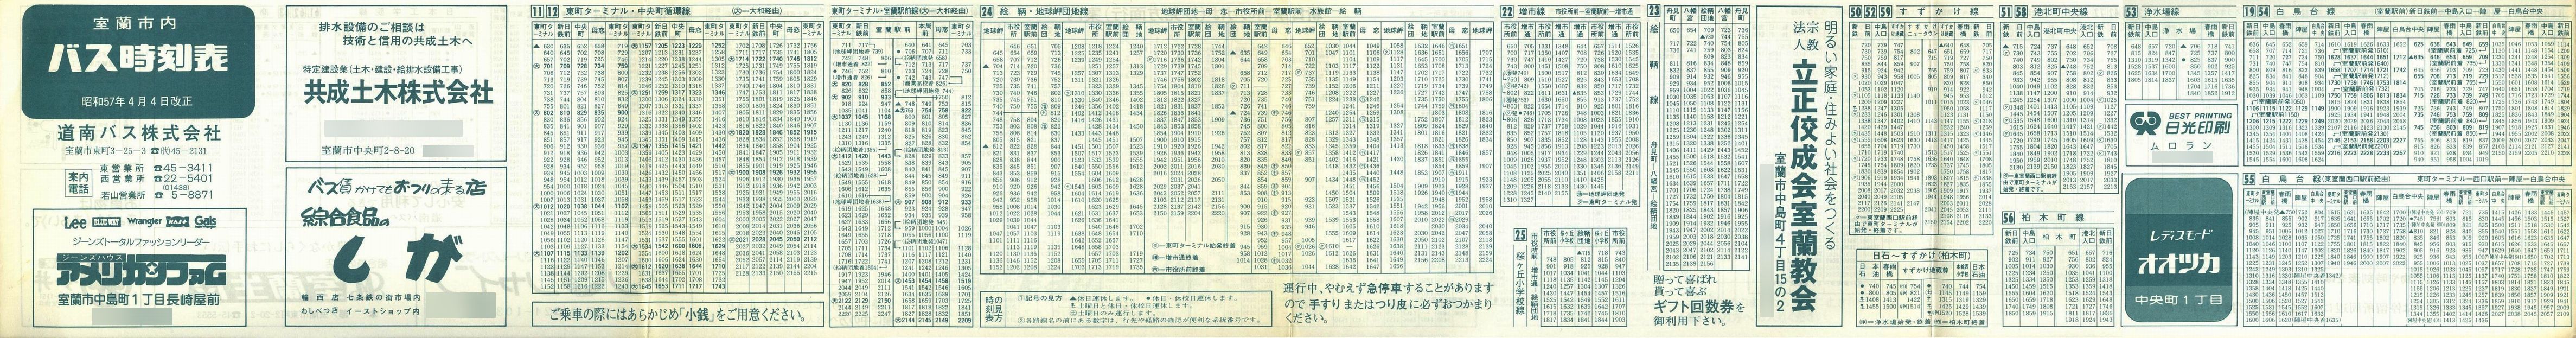 1982-04-04改正_道南バス_室蘭市内線時刻表表面